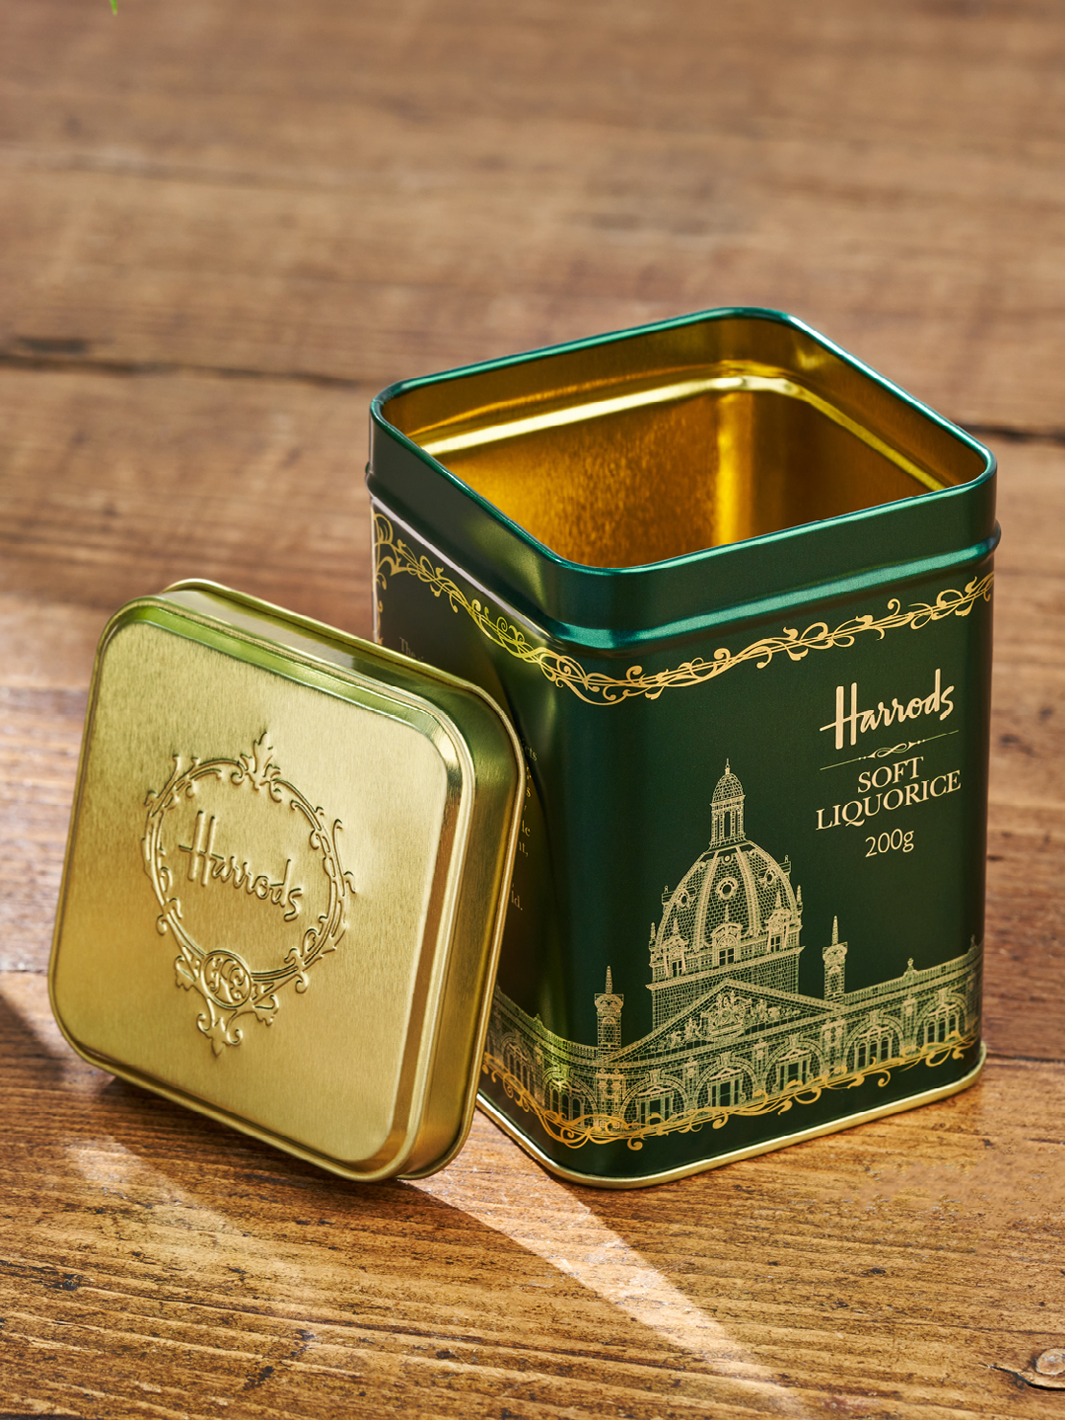 Een groen verpakkingsblik van Harrods voor snoep. Goud is geëtst in het groene ontwerp. 